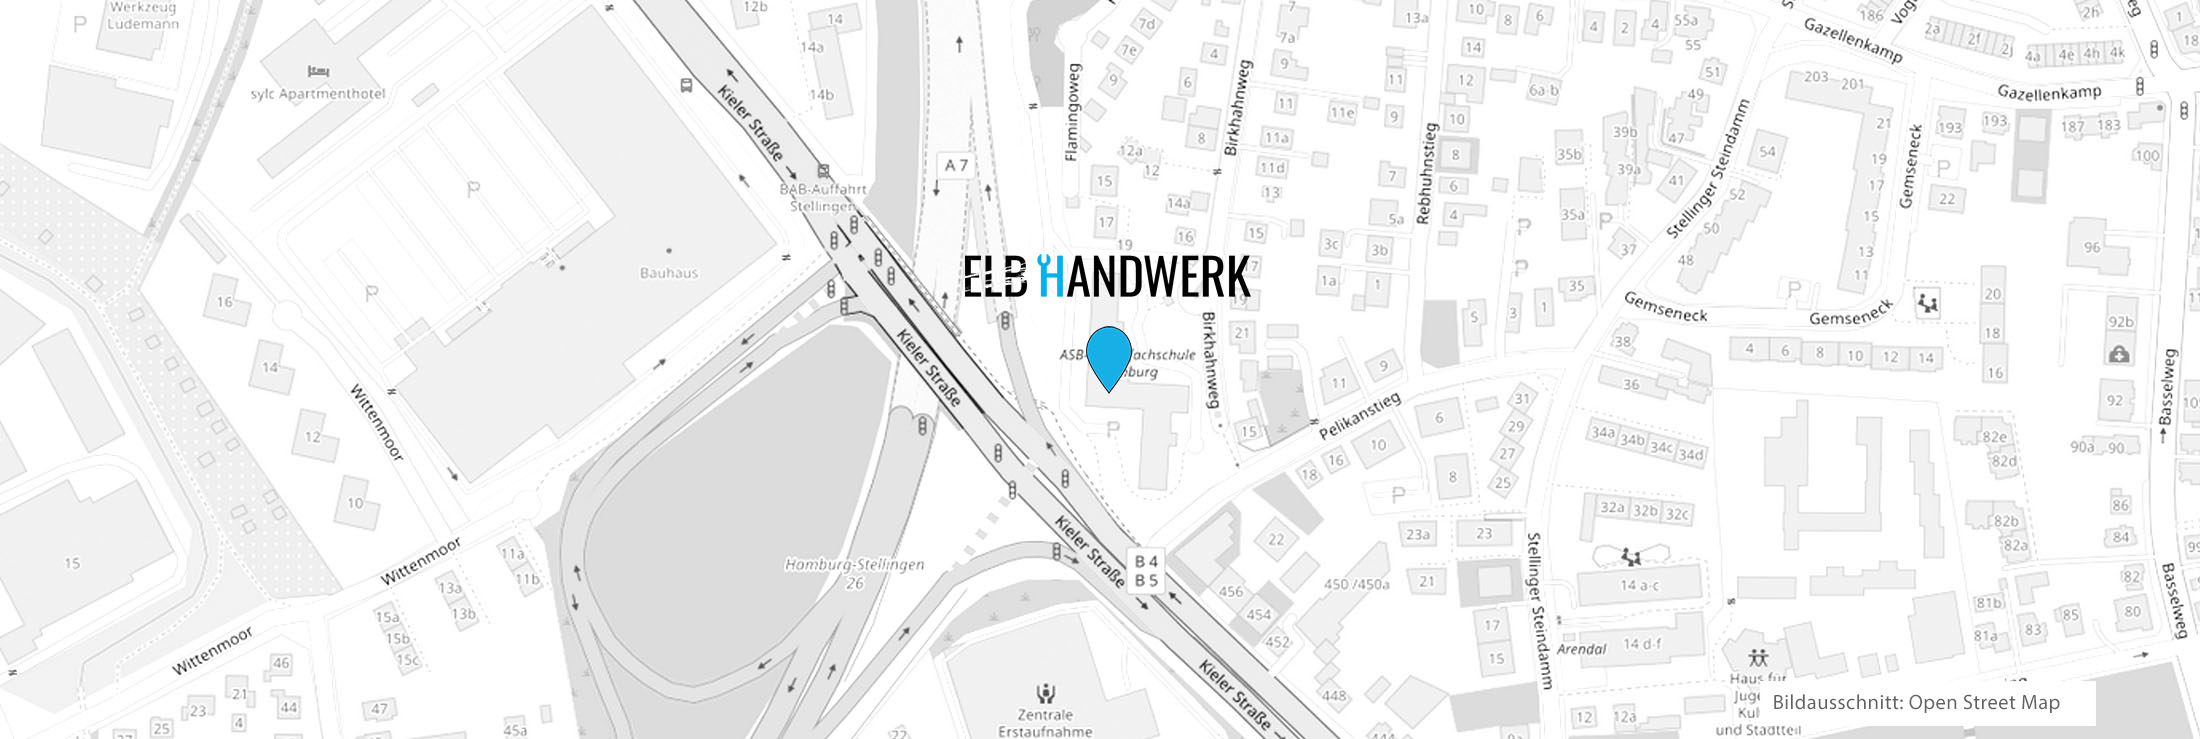 map anfahrt Elb Handwerk